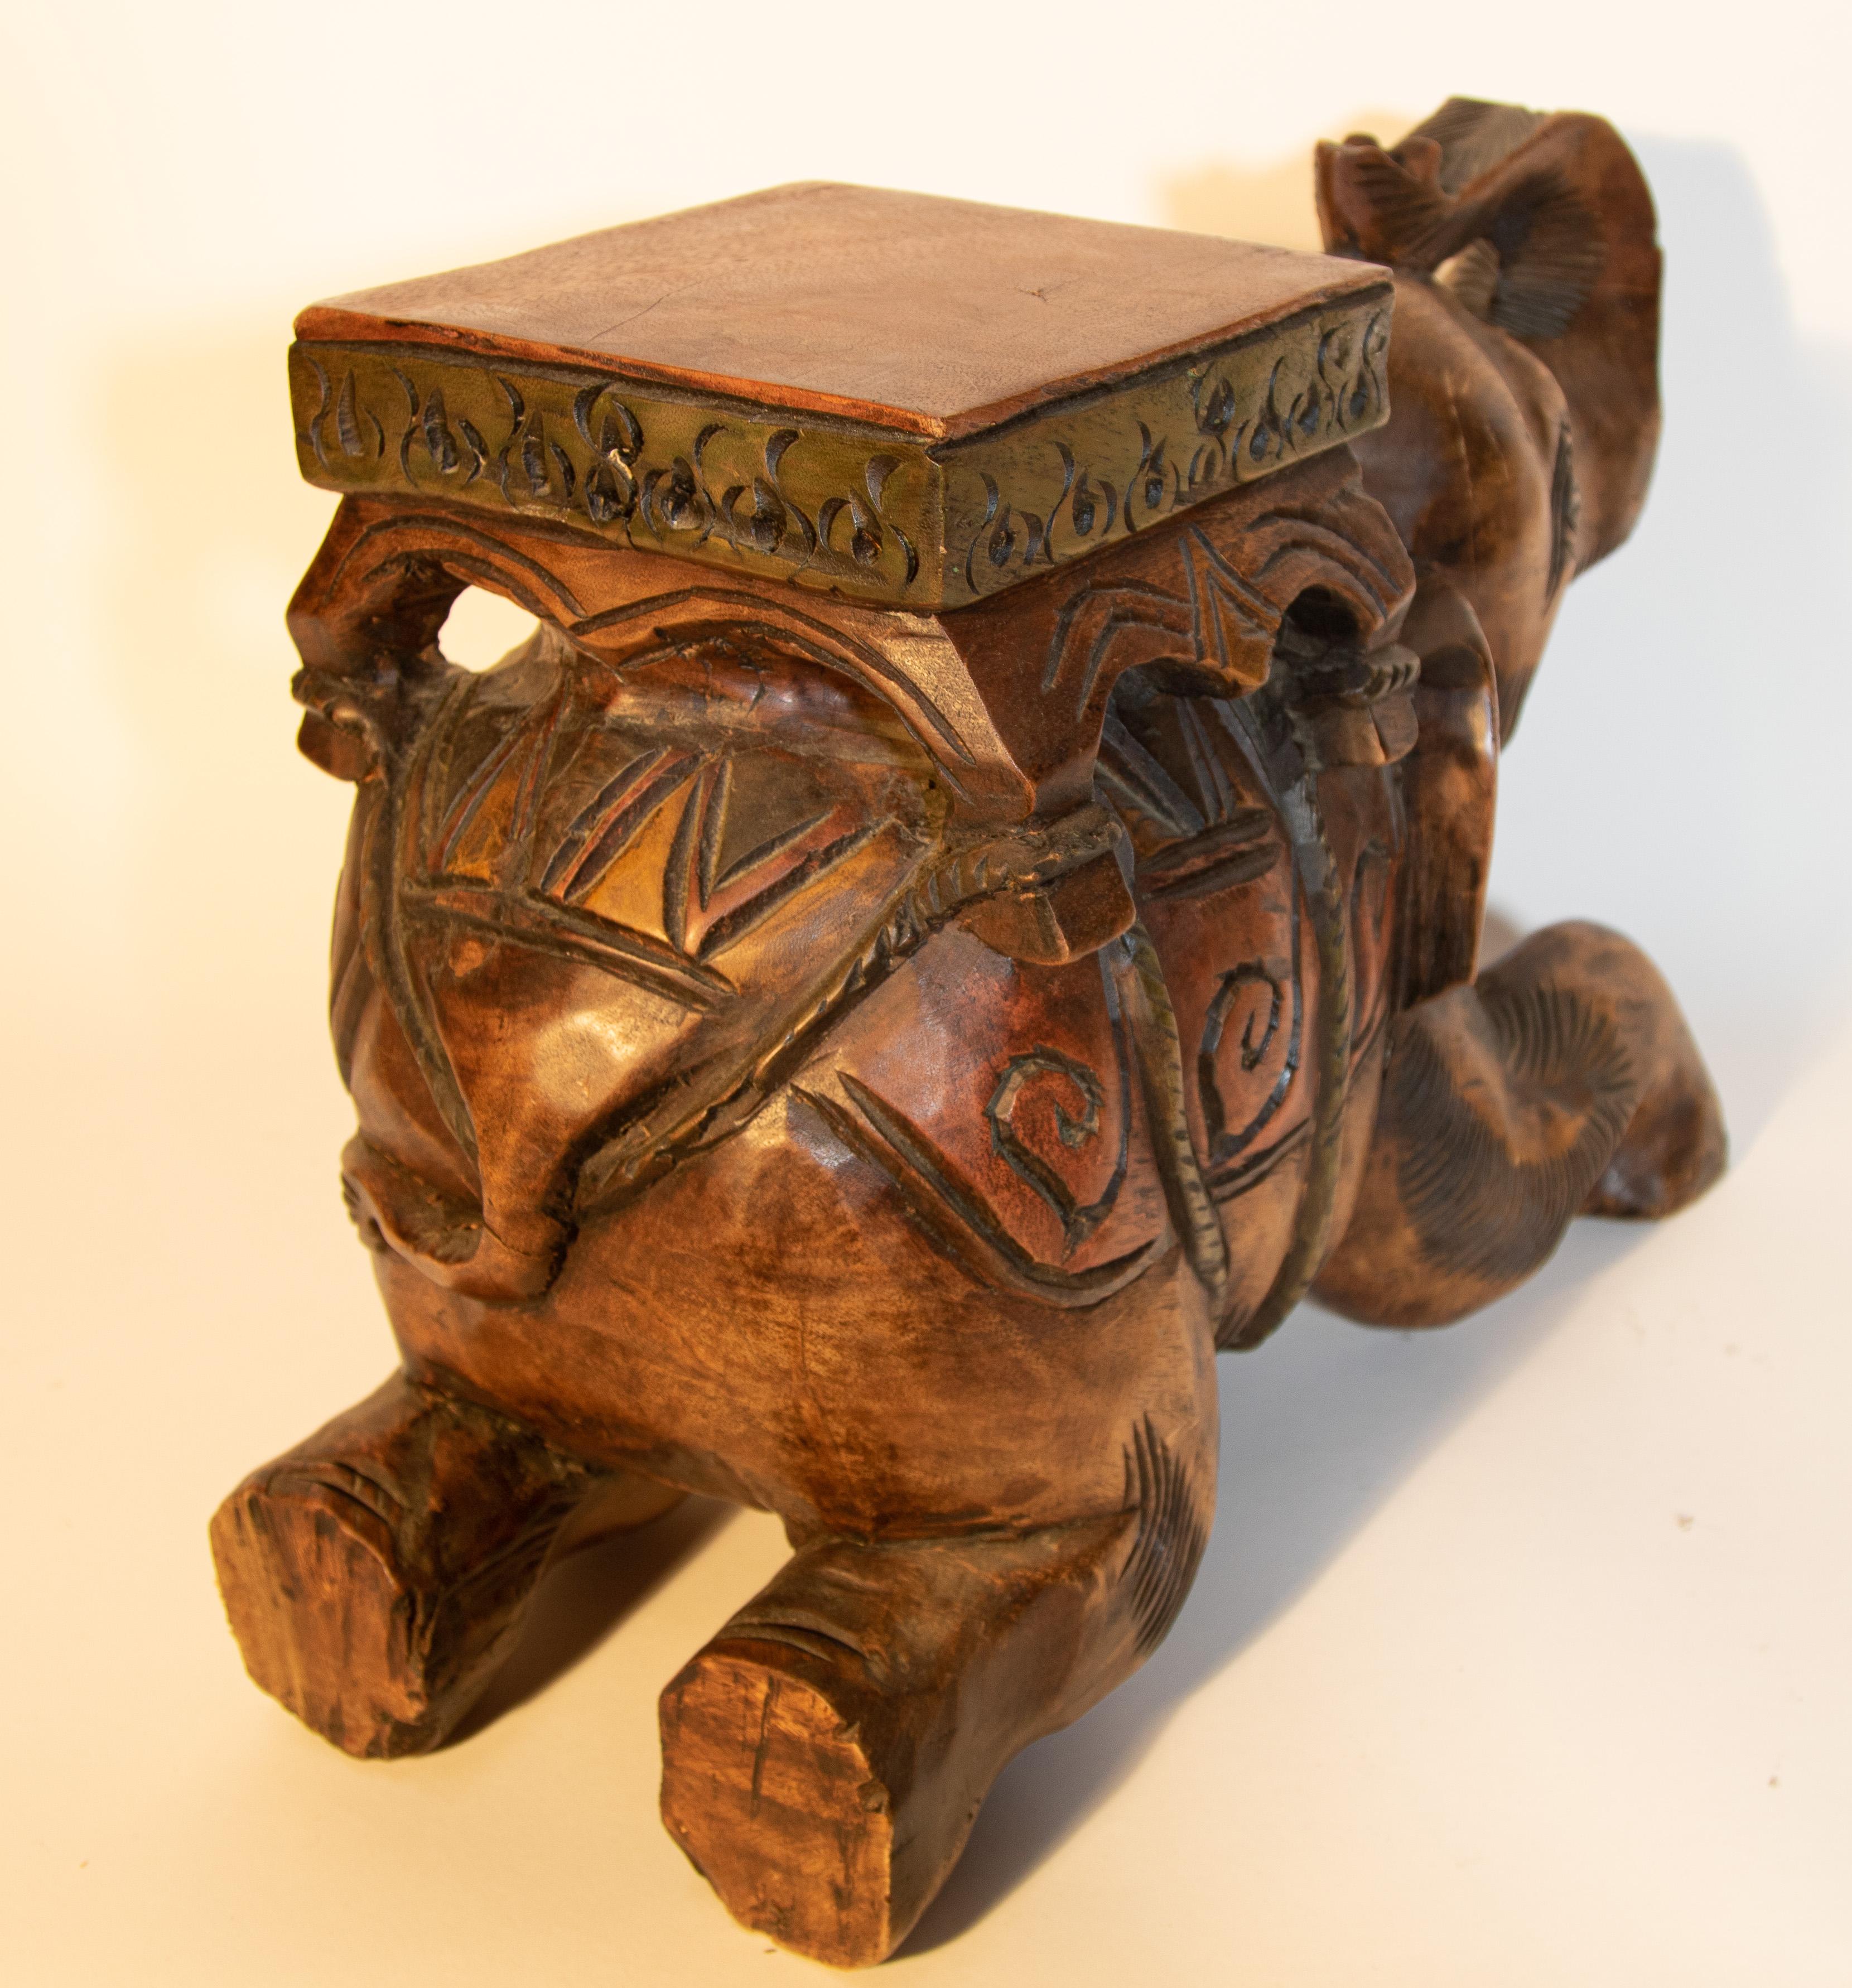 wooden elephant stool